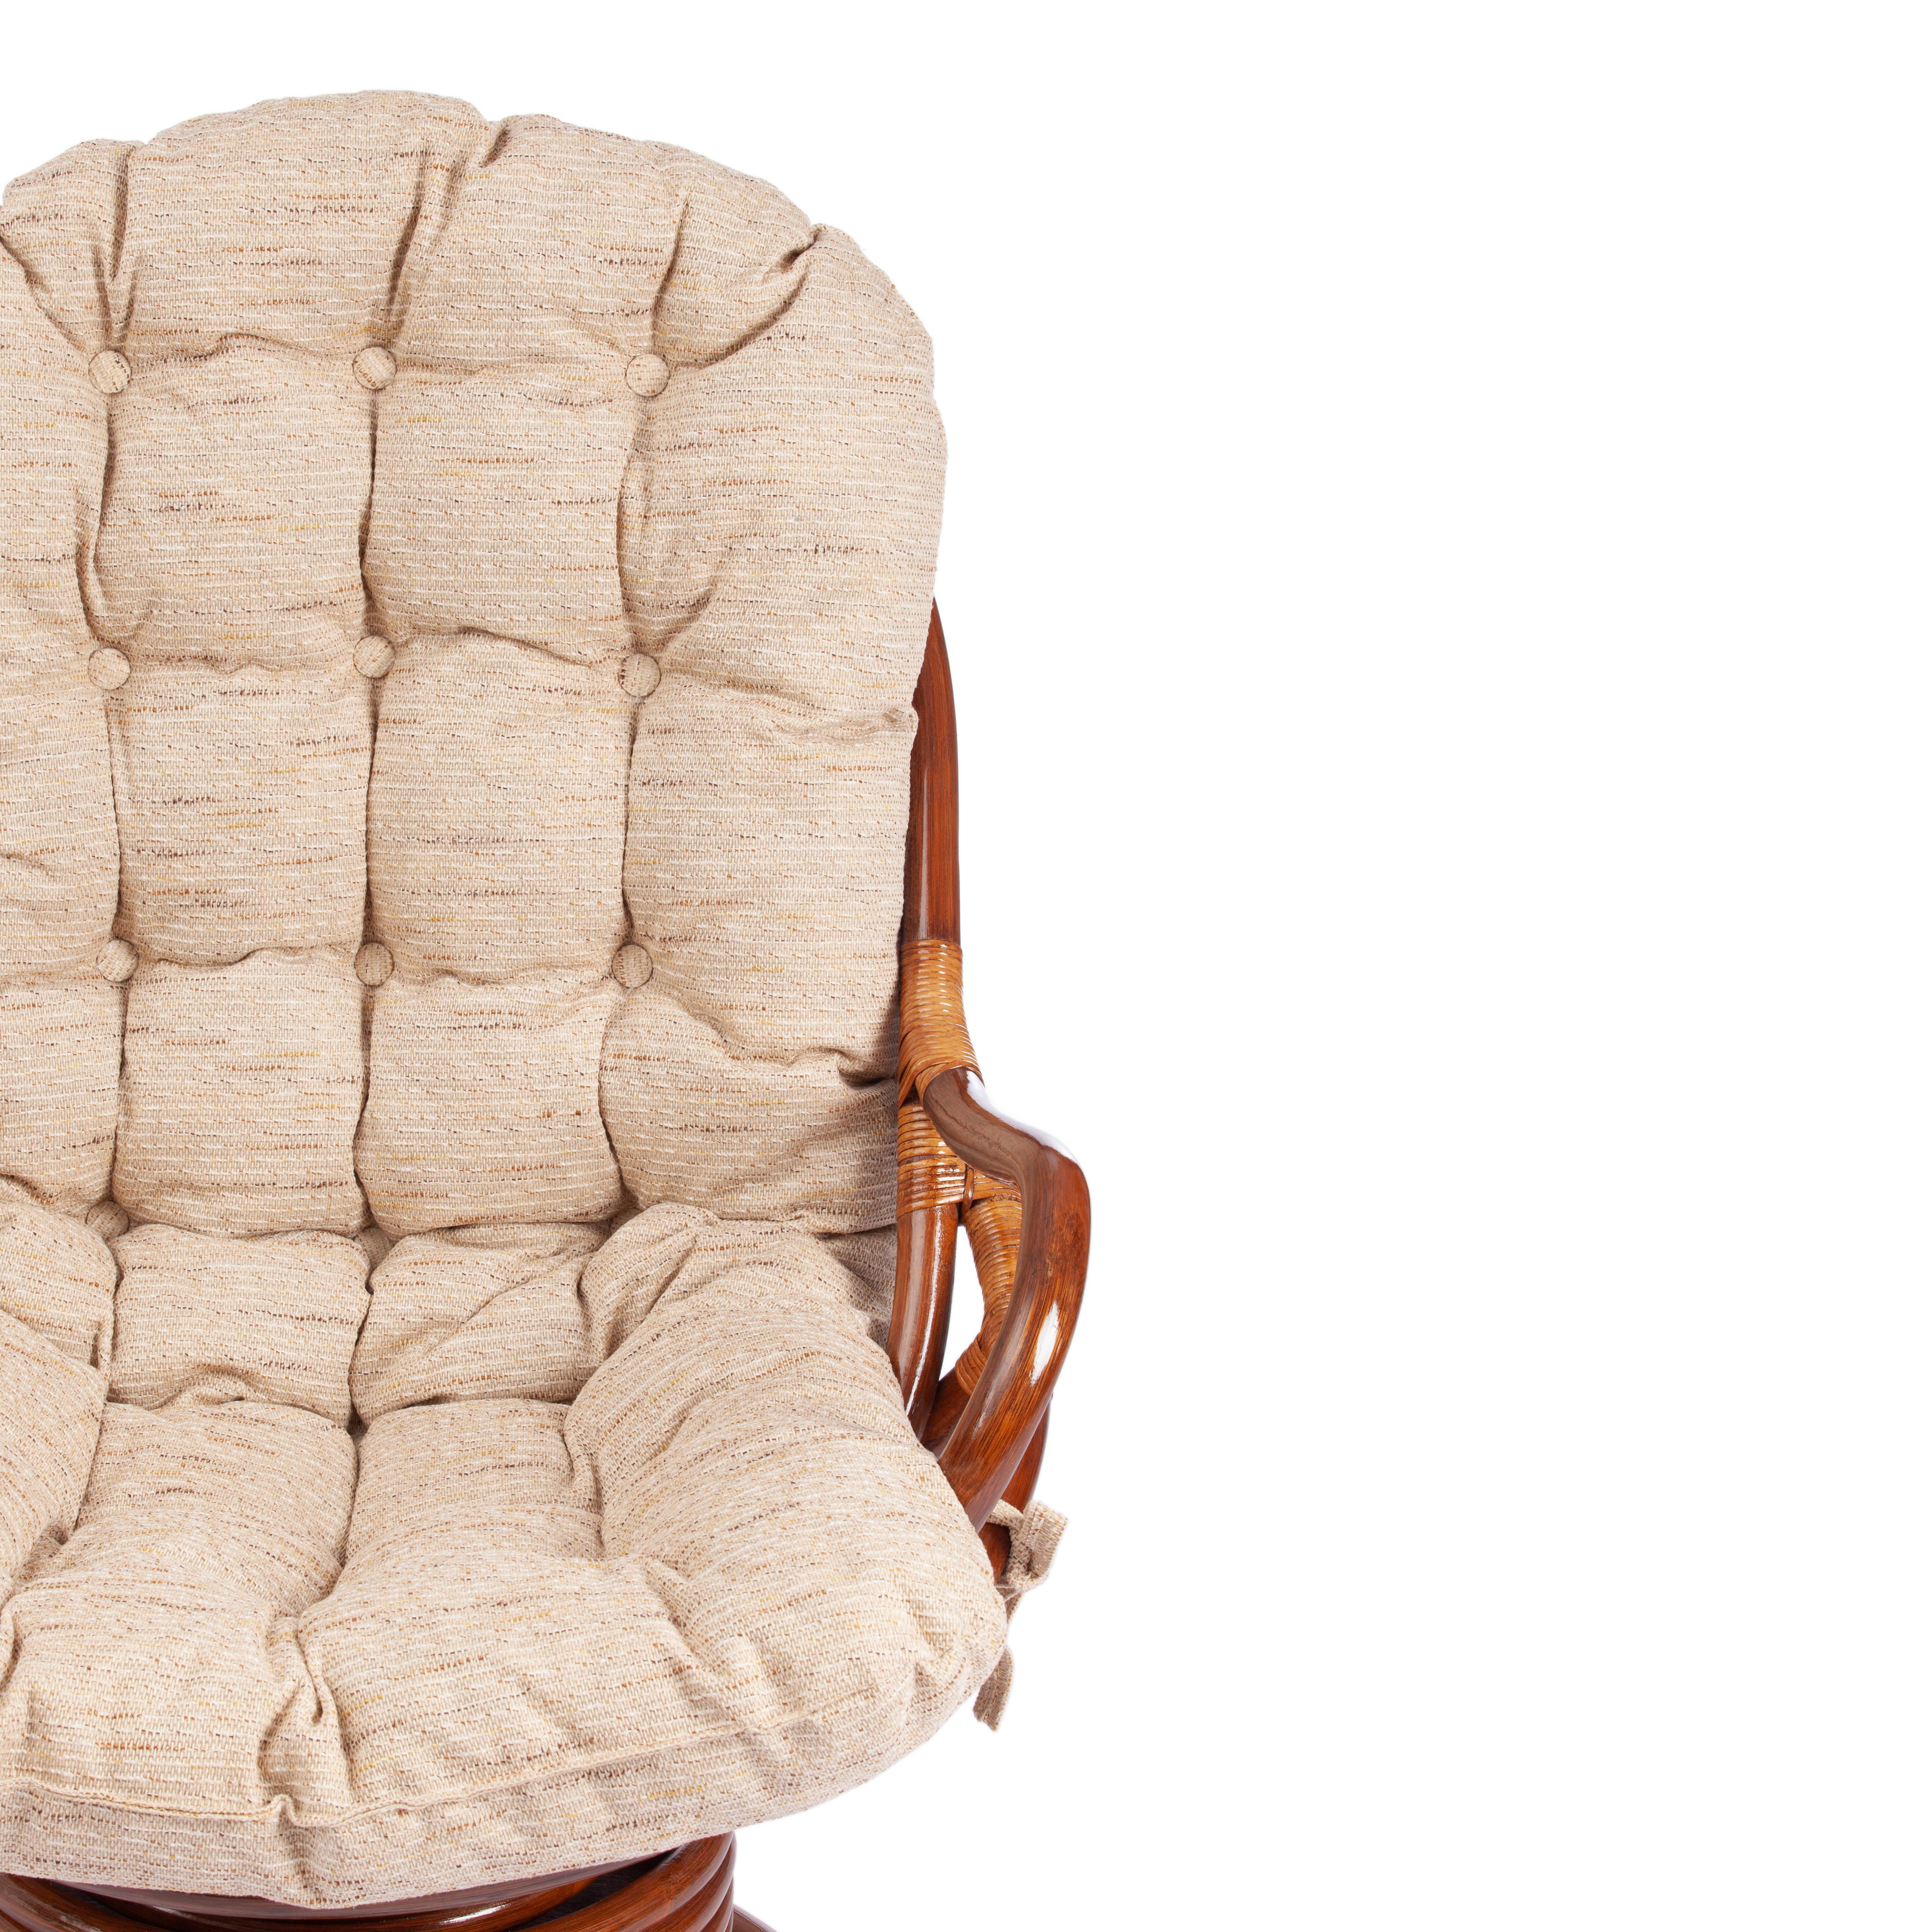 Кресло вращающееся "FLORES" 5005 /с подушкой/ Pecan (орех), ткань: хлопок, цвет: натуральный